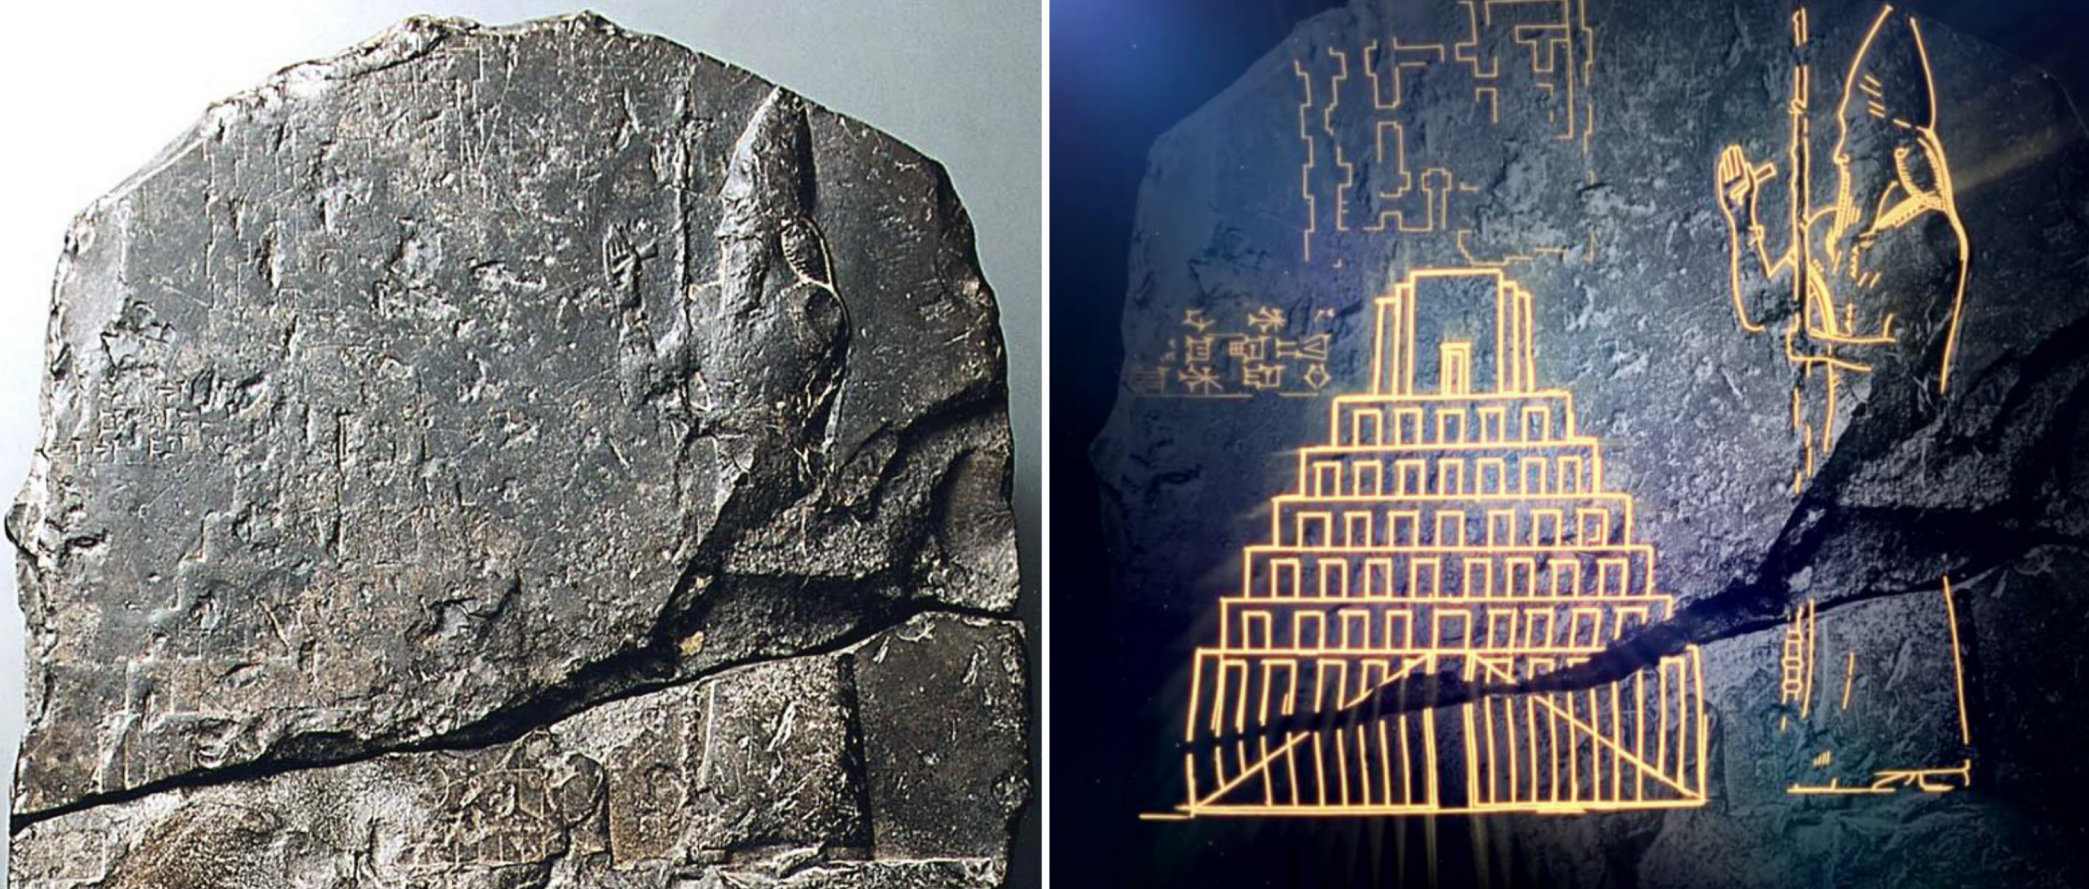 Det første bevis på det bibelske tårn i Babel blev opdaget 2